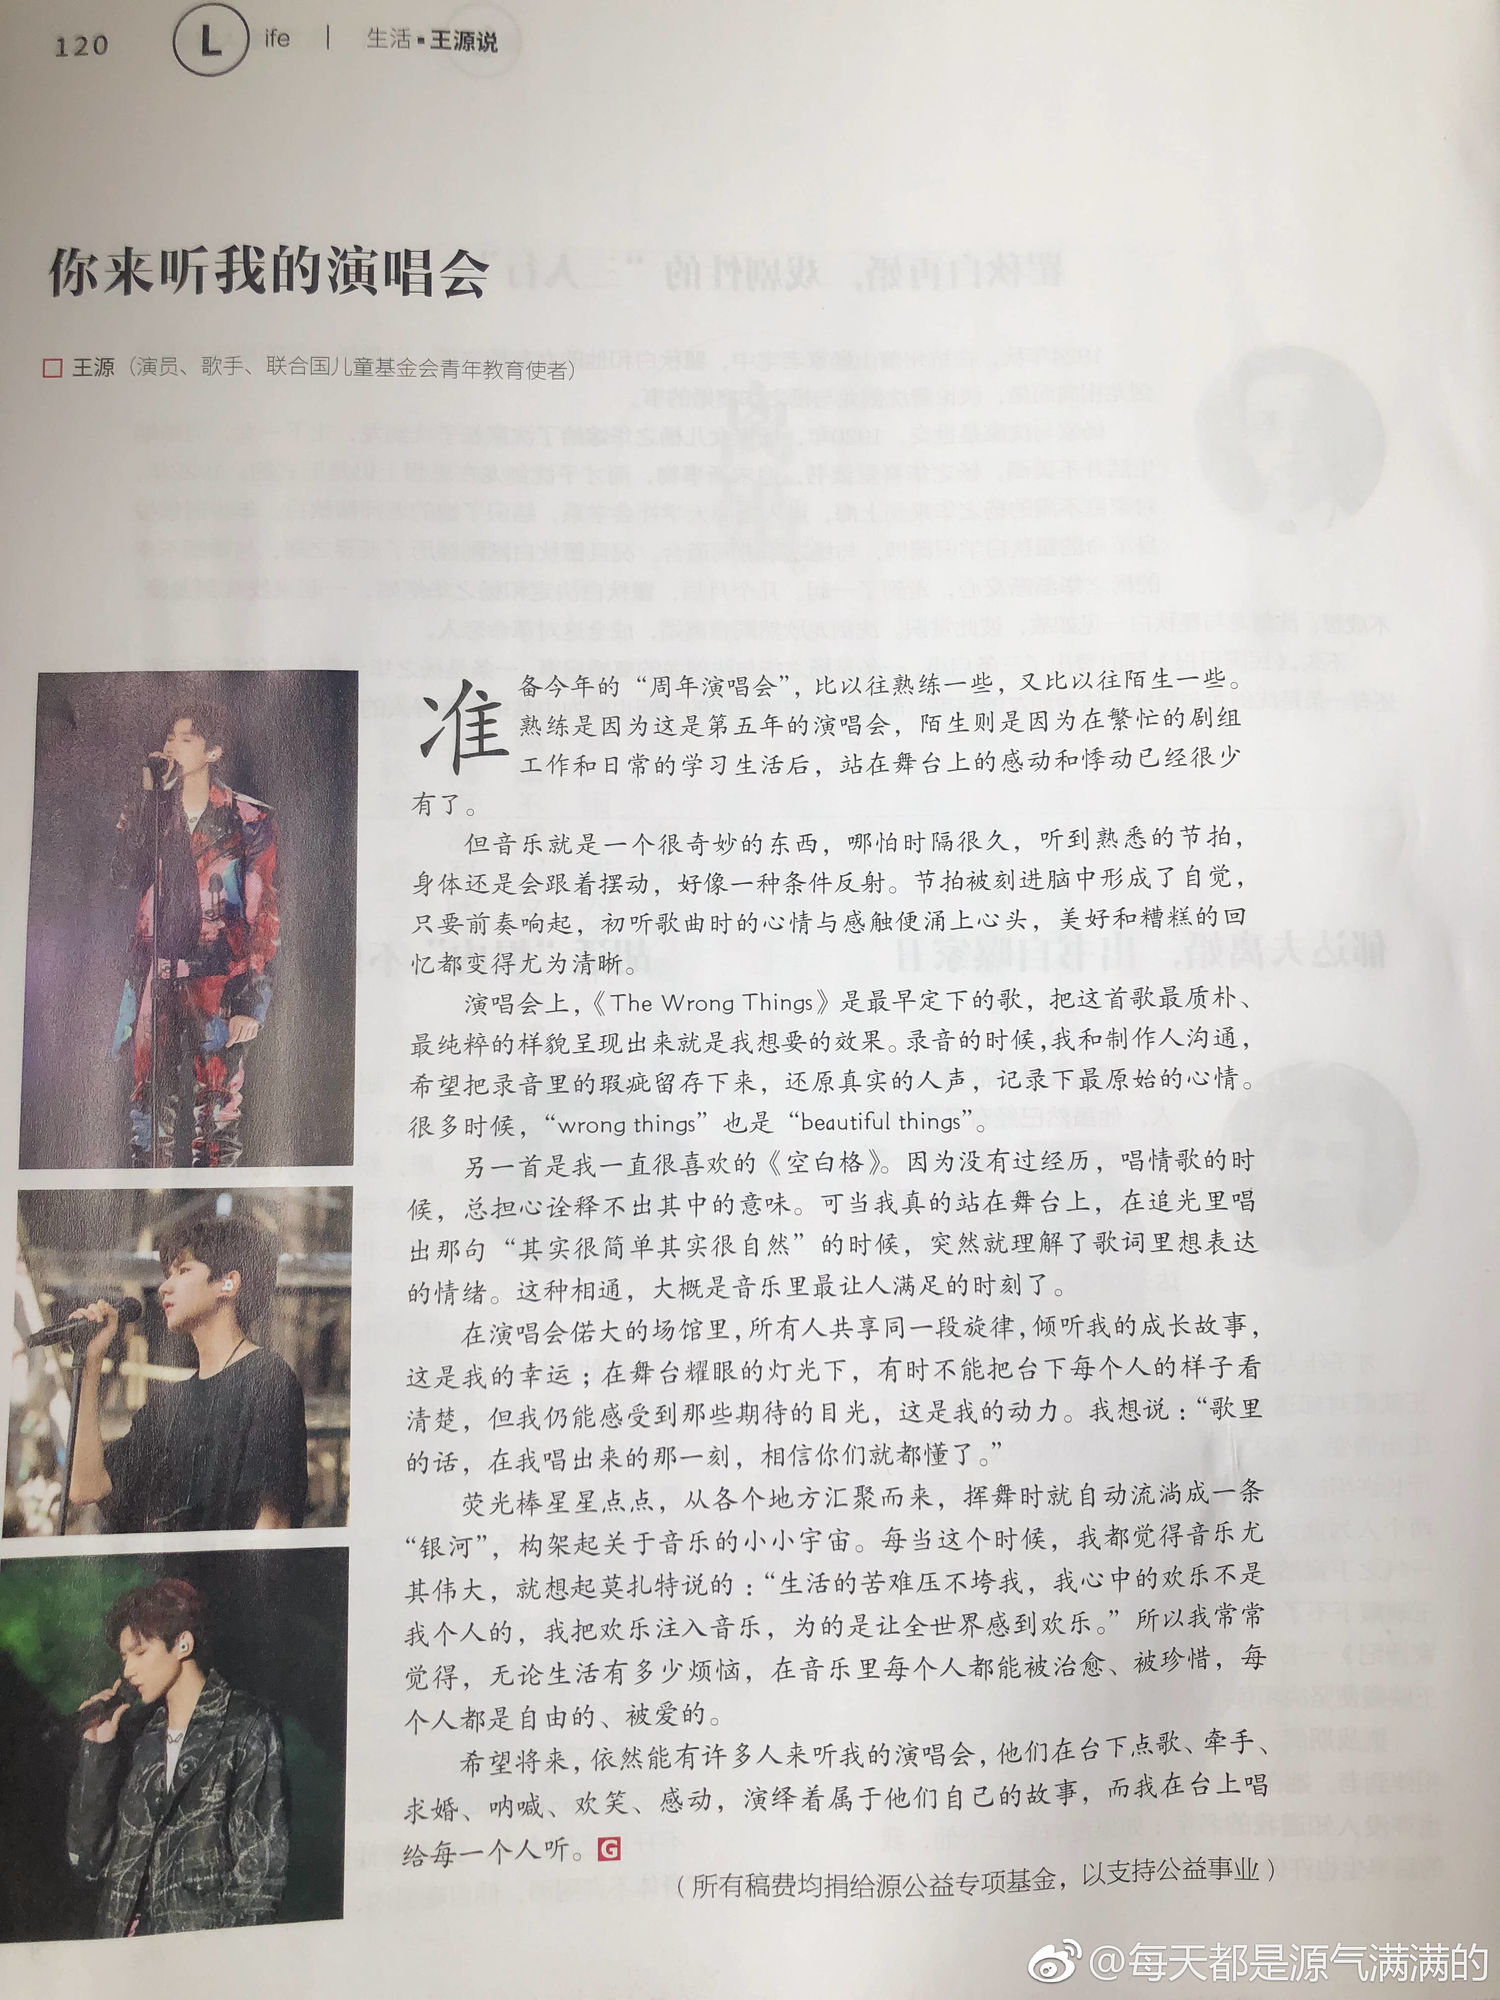 王源新闻180915环球人物专栏王源说最新一期杂志你来听我的演唱会